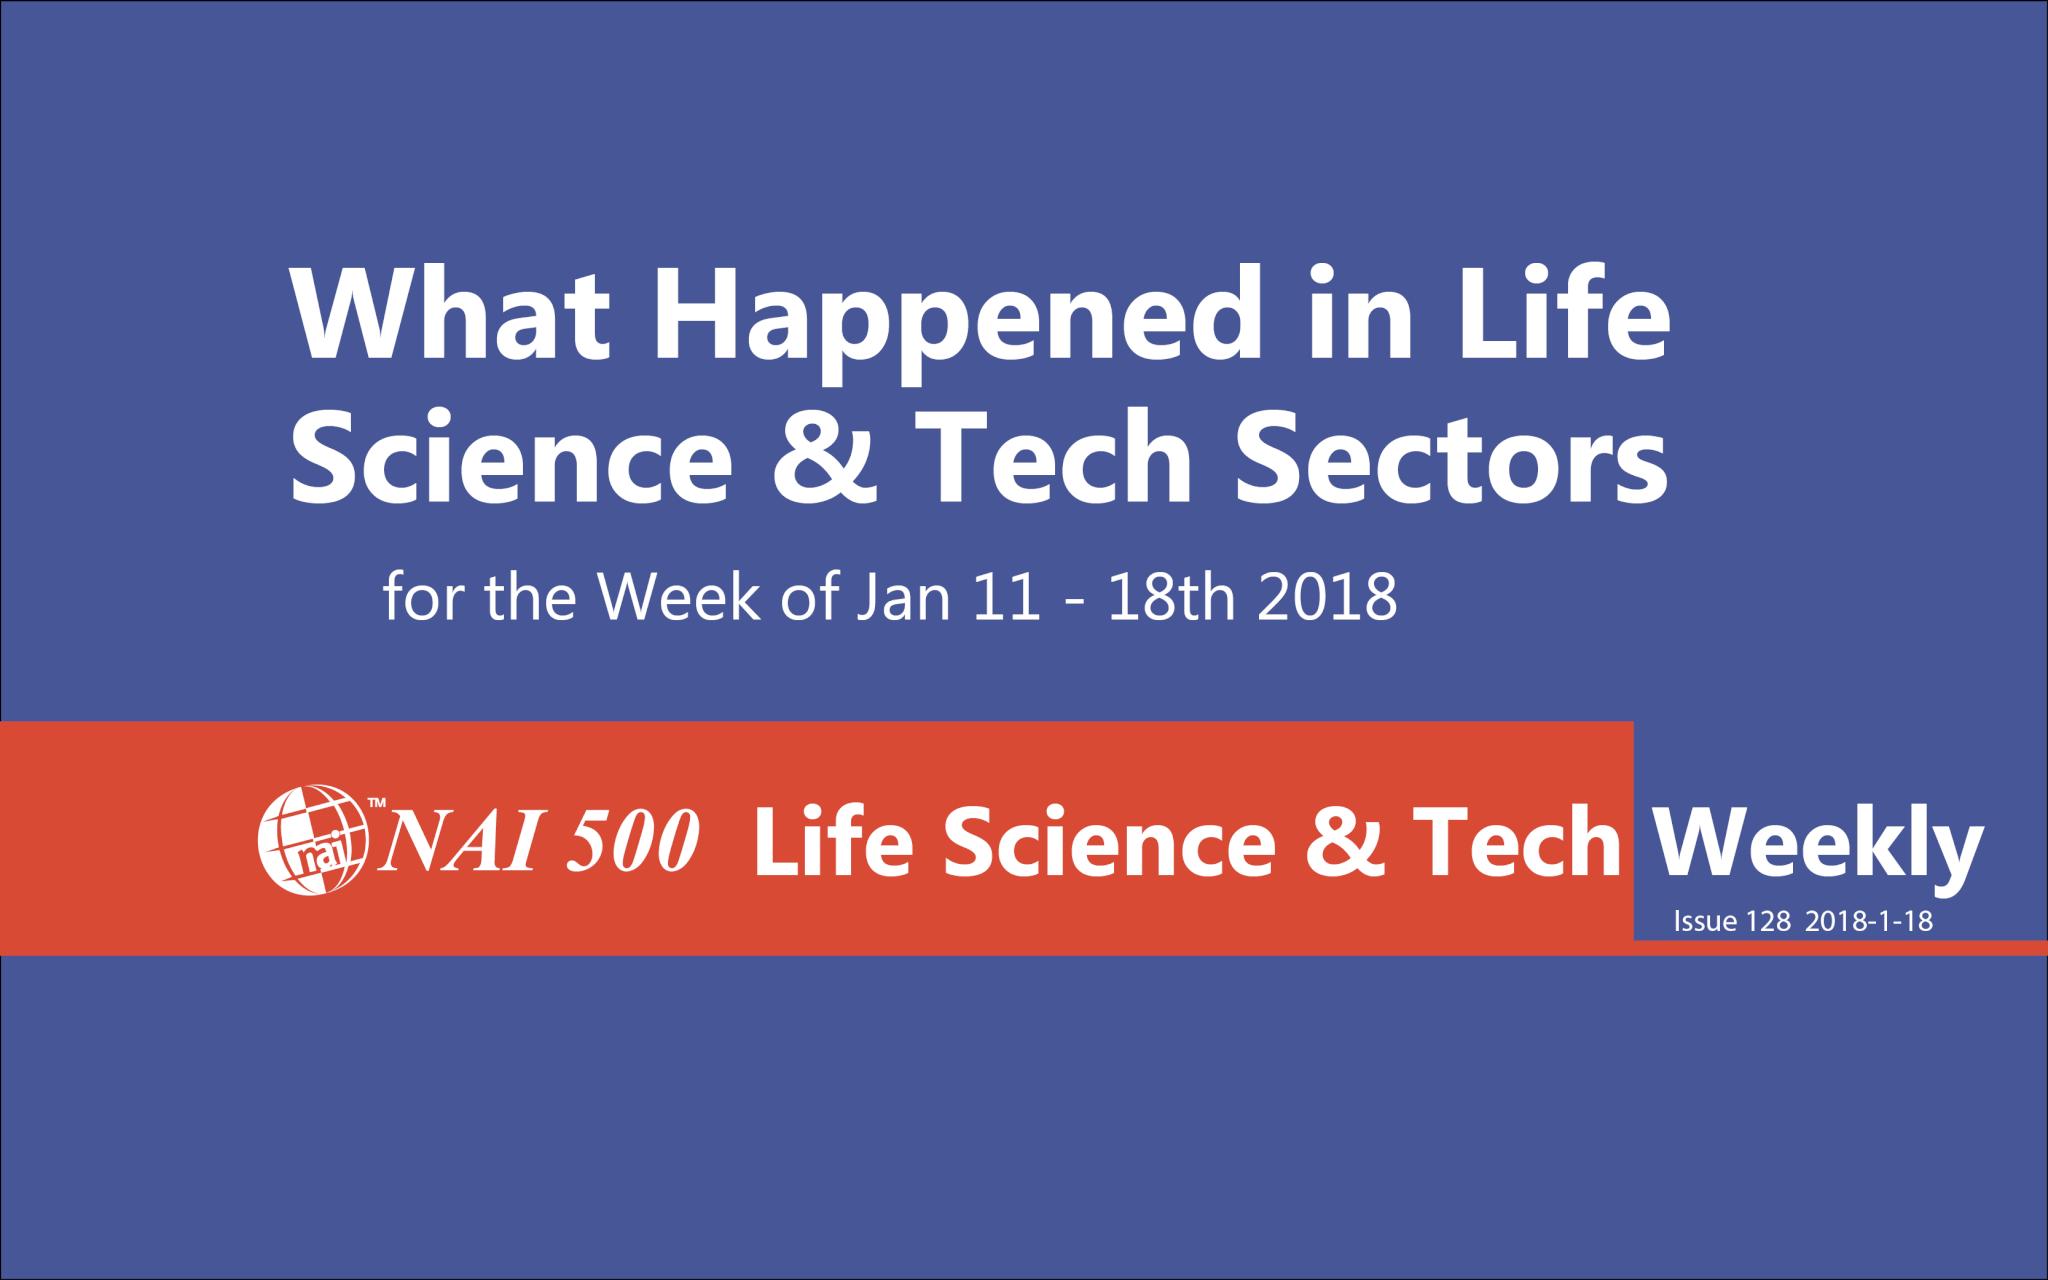 NAI Life Science Weekly - www.nai500.com